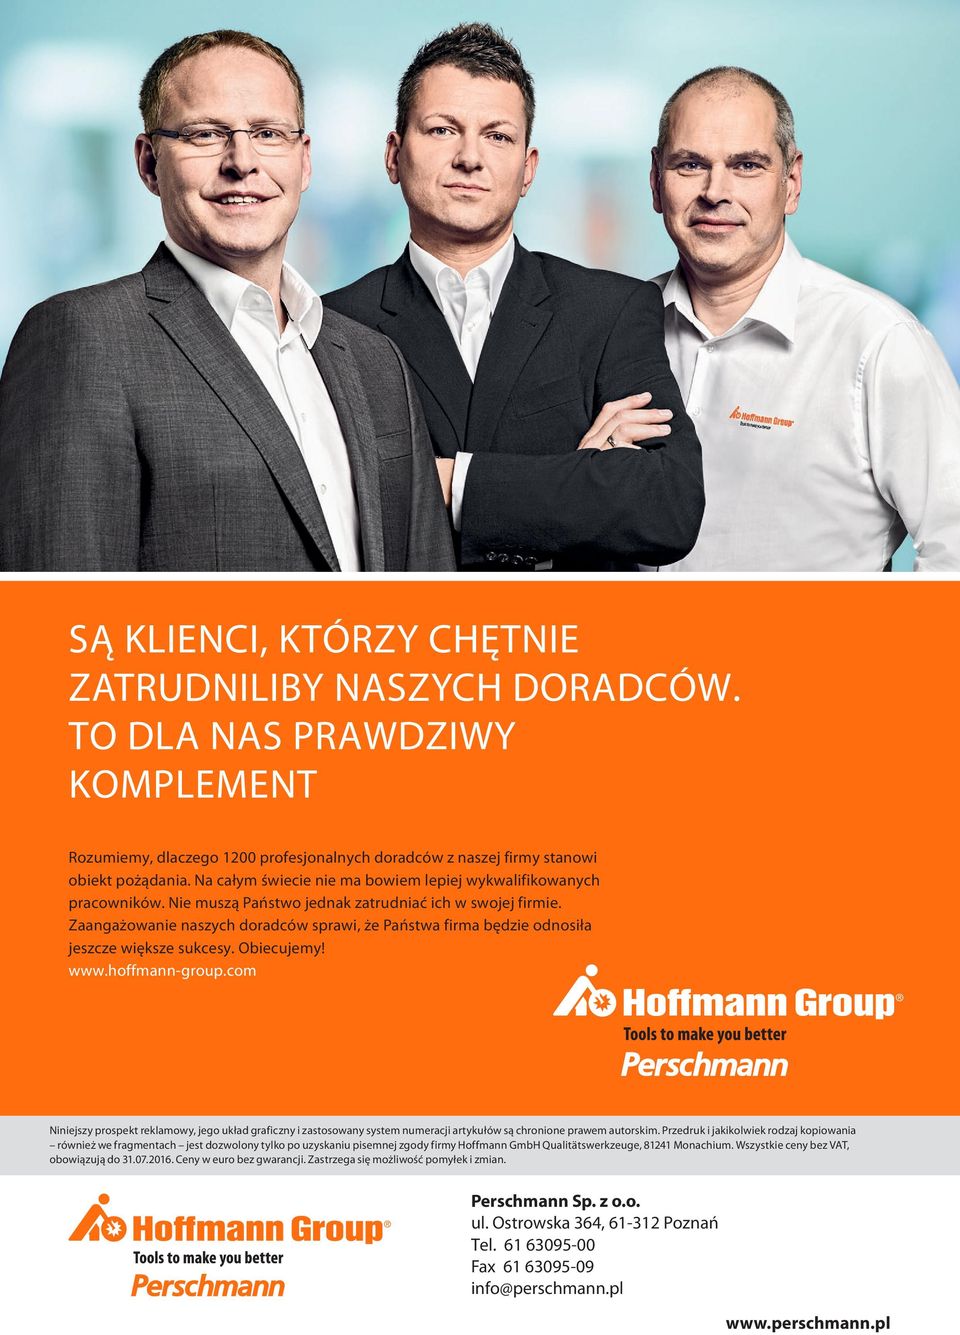 Zaangażowanie naszych doradców sprawi, że Państwa firma będzie odnosiła jeszcze większe sukcesy. Obiecujemy! www.hoffmann-group.